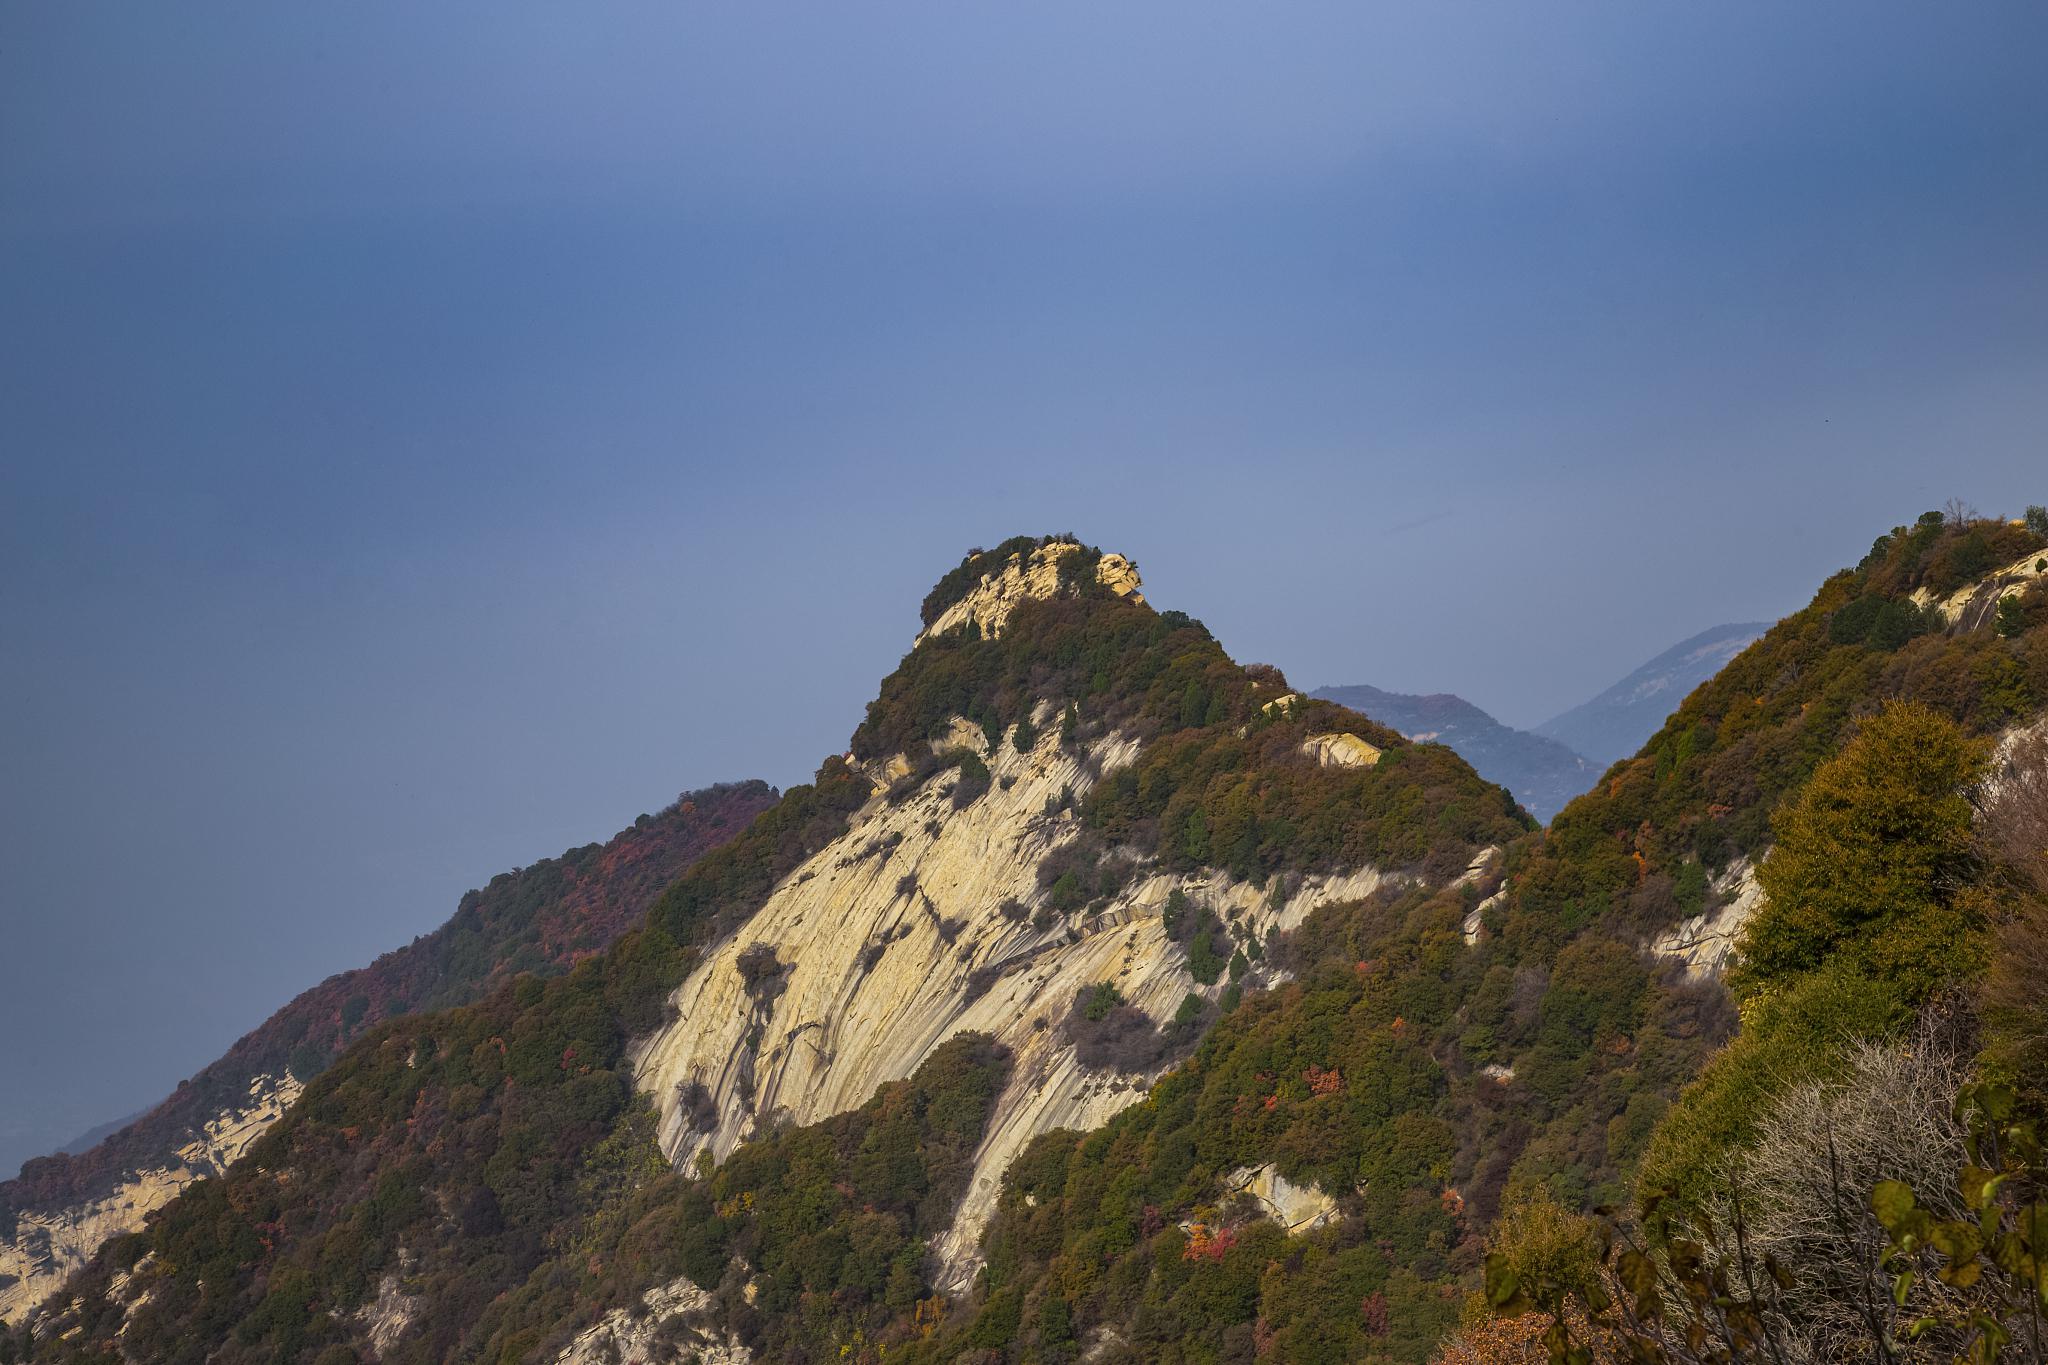 少华山是中国著名的山岳风景名胜区之一,位于陕西省渭南市华县,距离